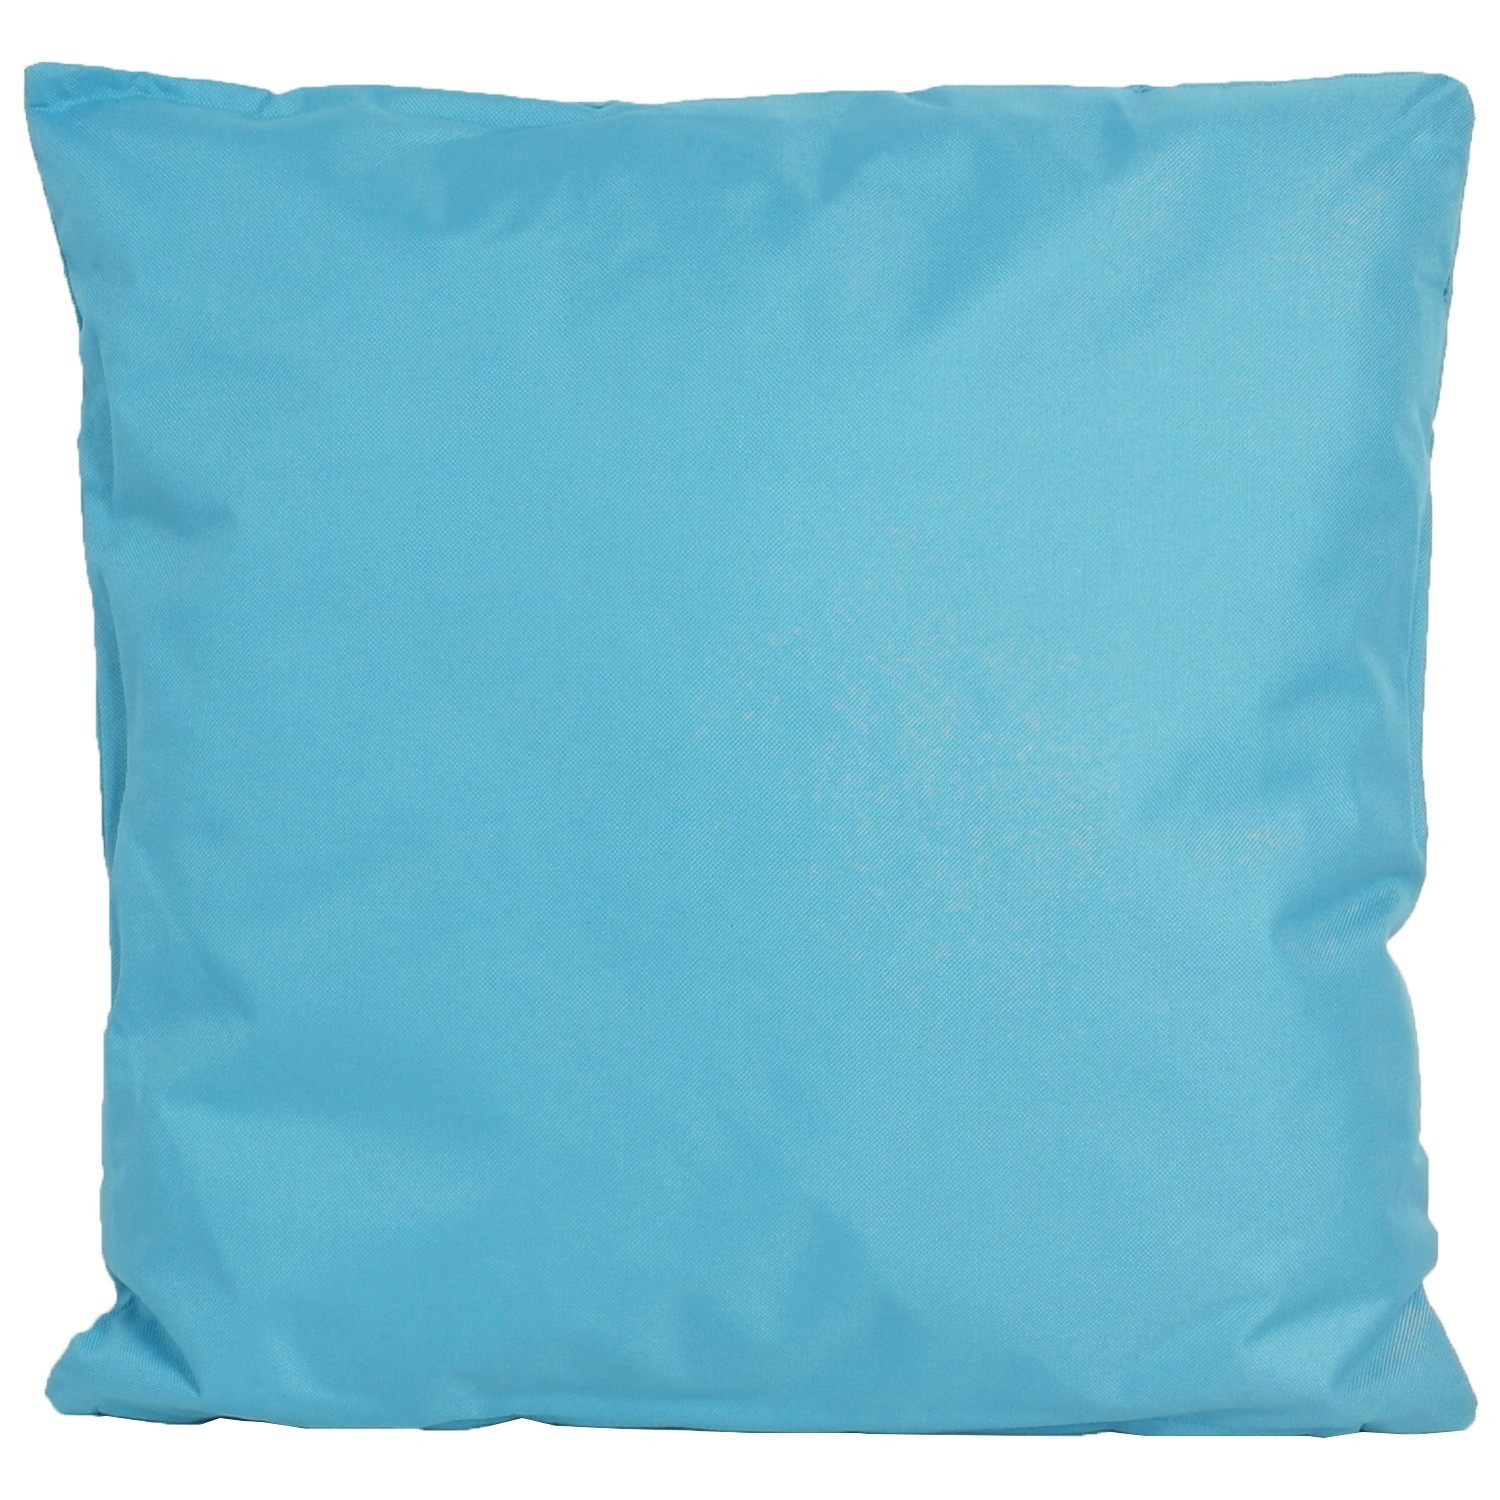 1x Buiten-woonkamer-slaapkamer kussens in het lichtblauw 45 x 45 cm